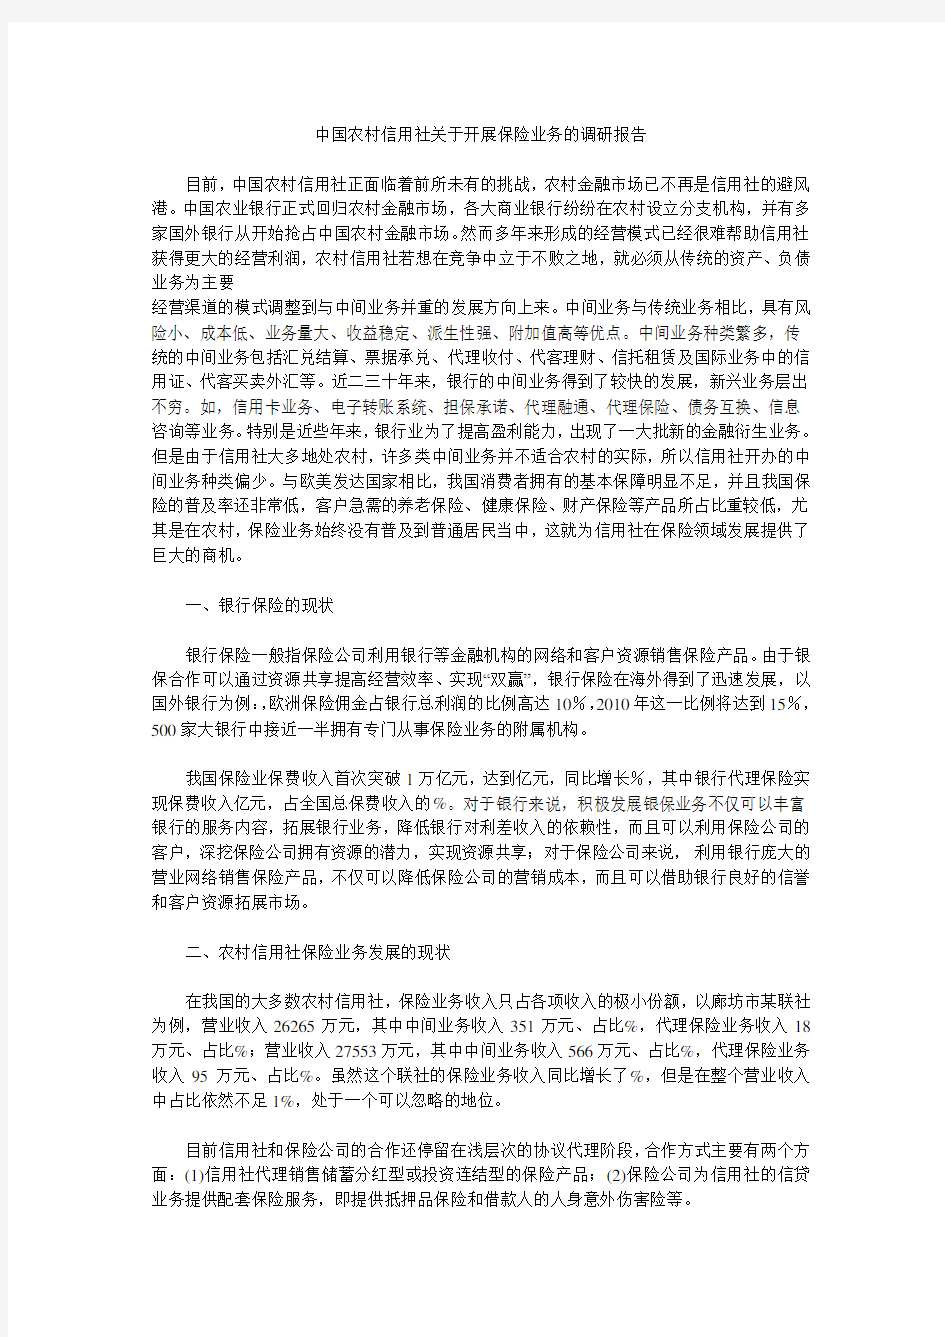 中国农村信用社关于开展保险业务的调研报告